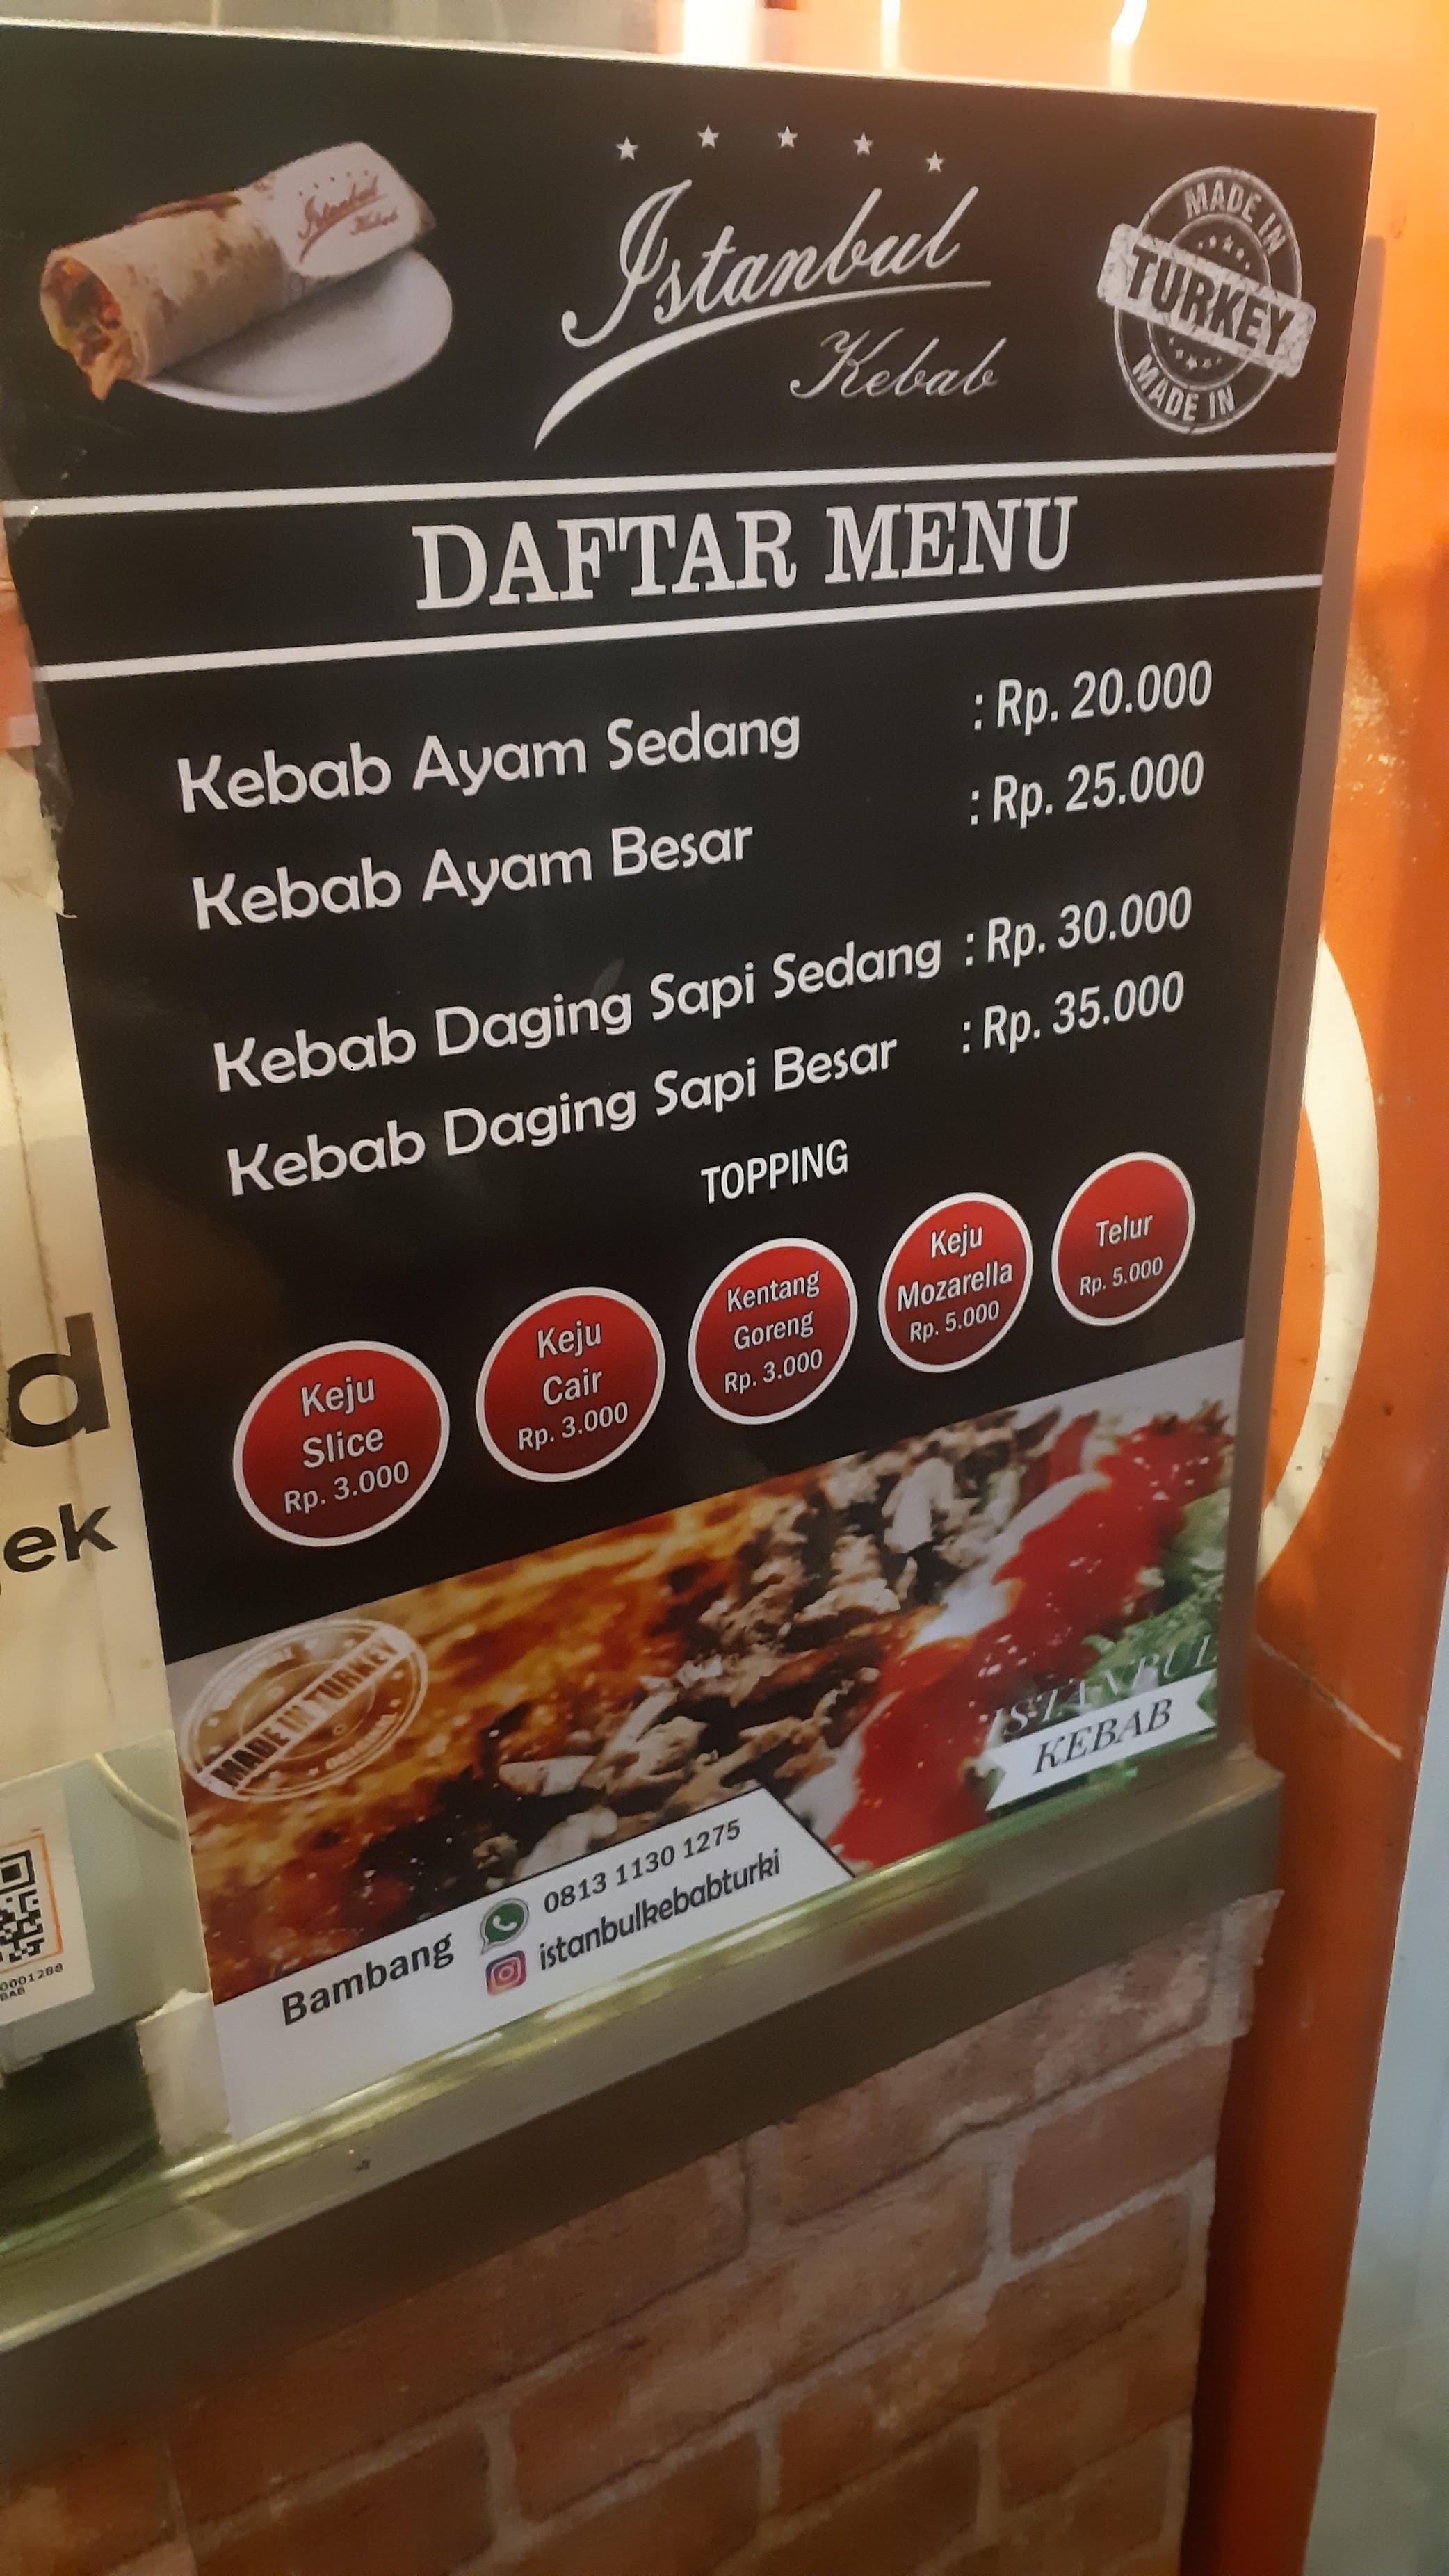 Istanbul Kebab Turki Graha Bintaro review